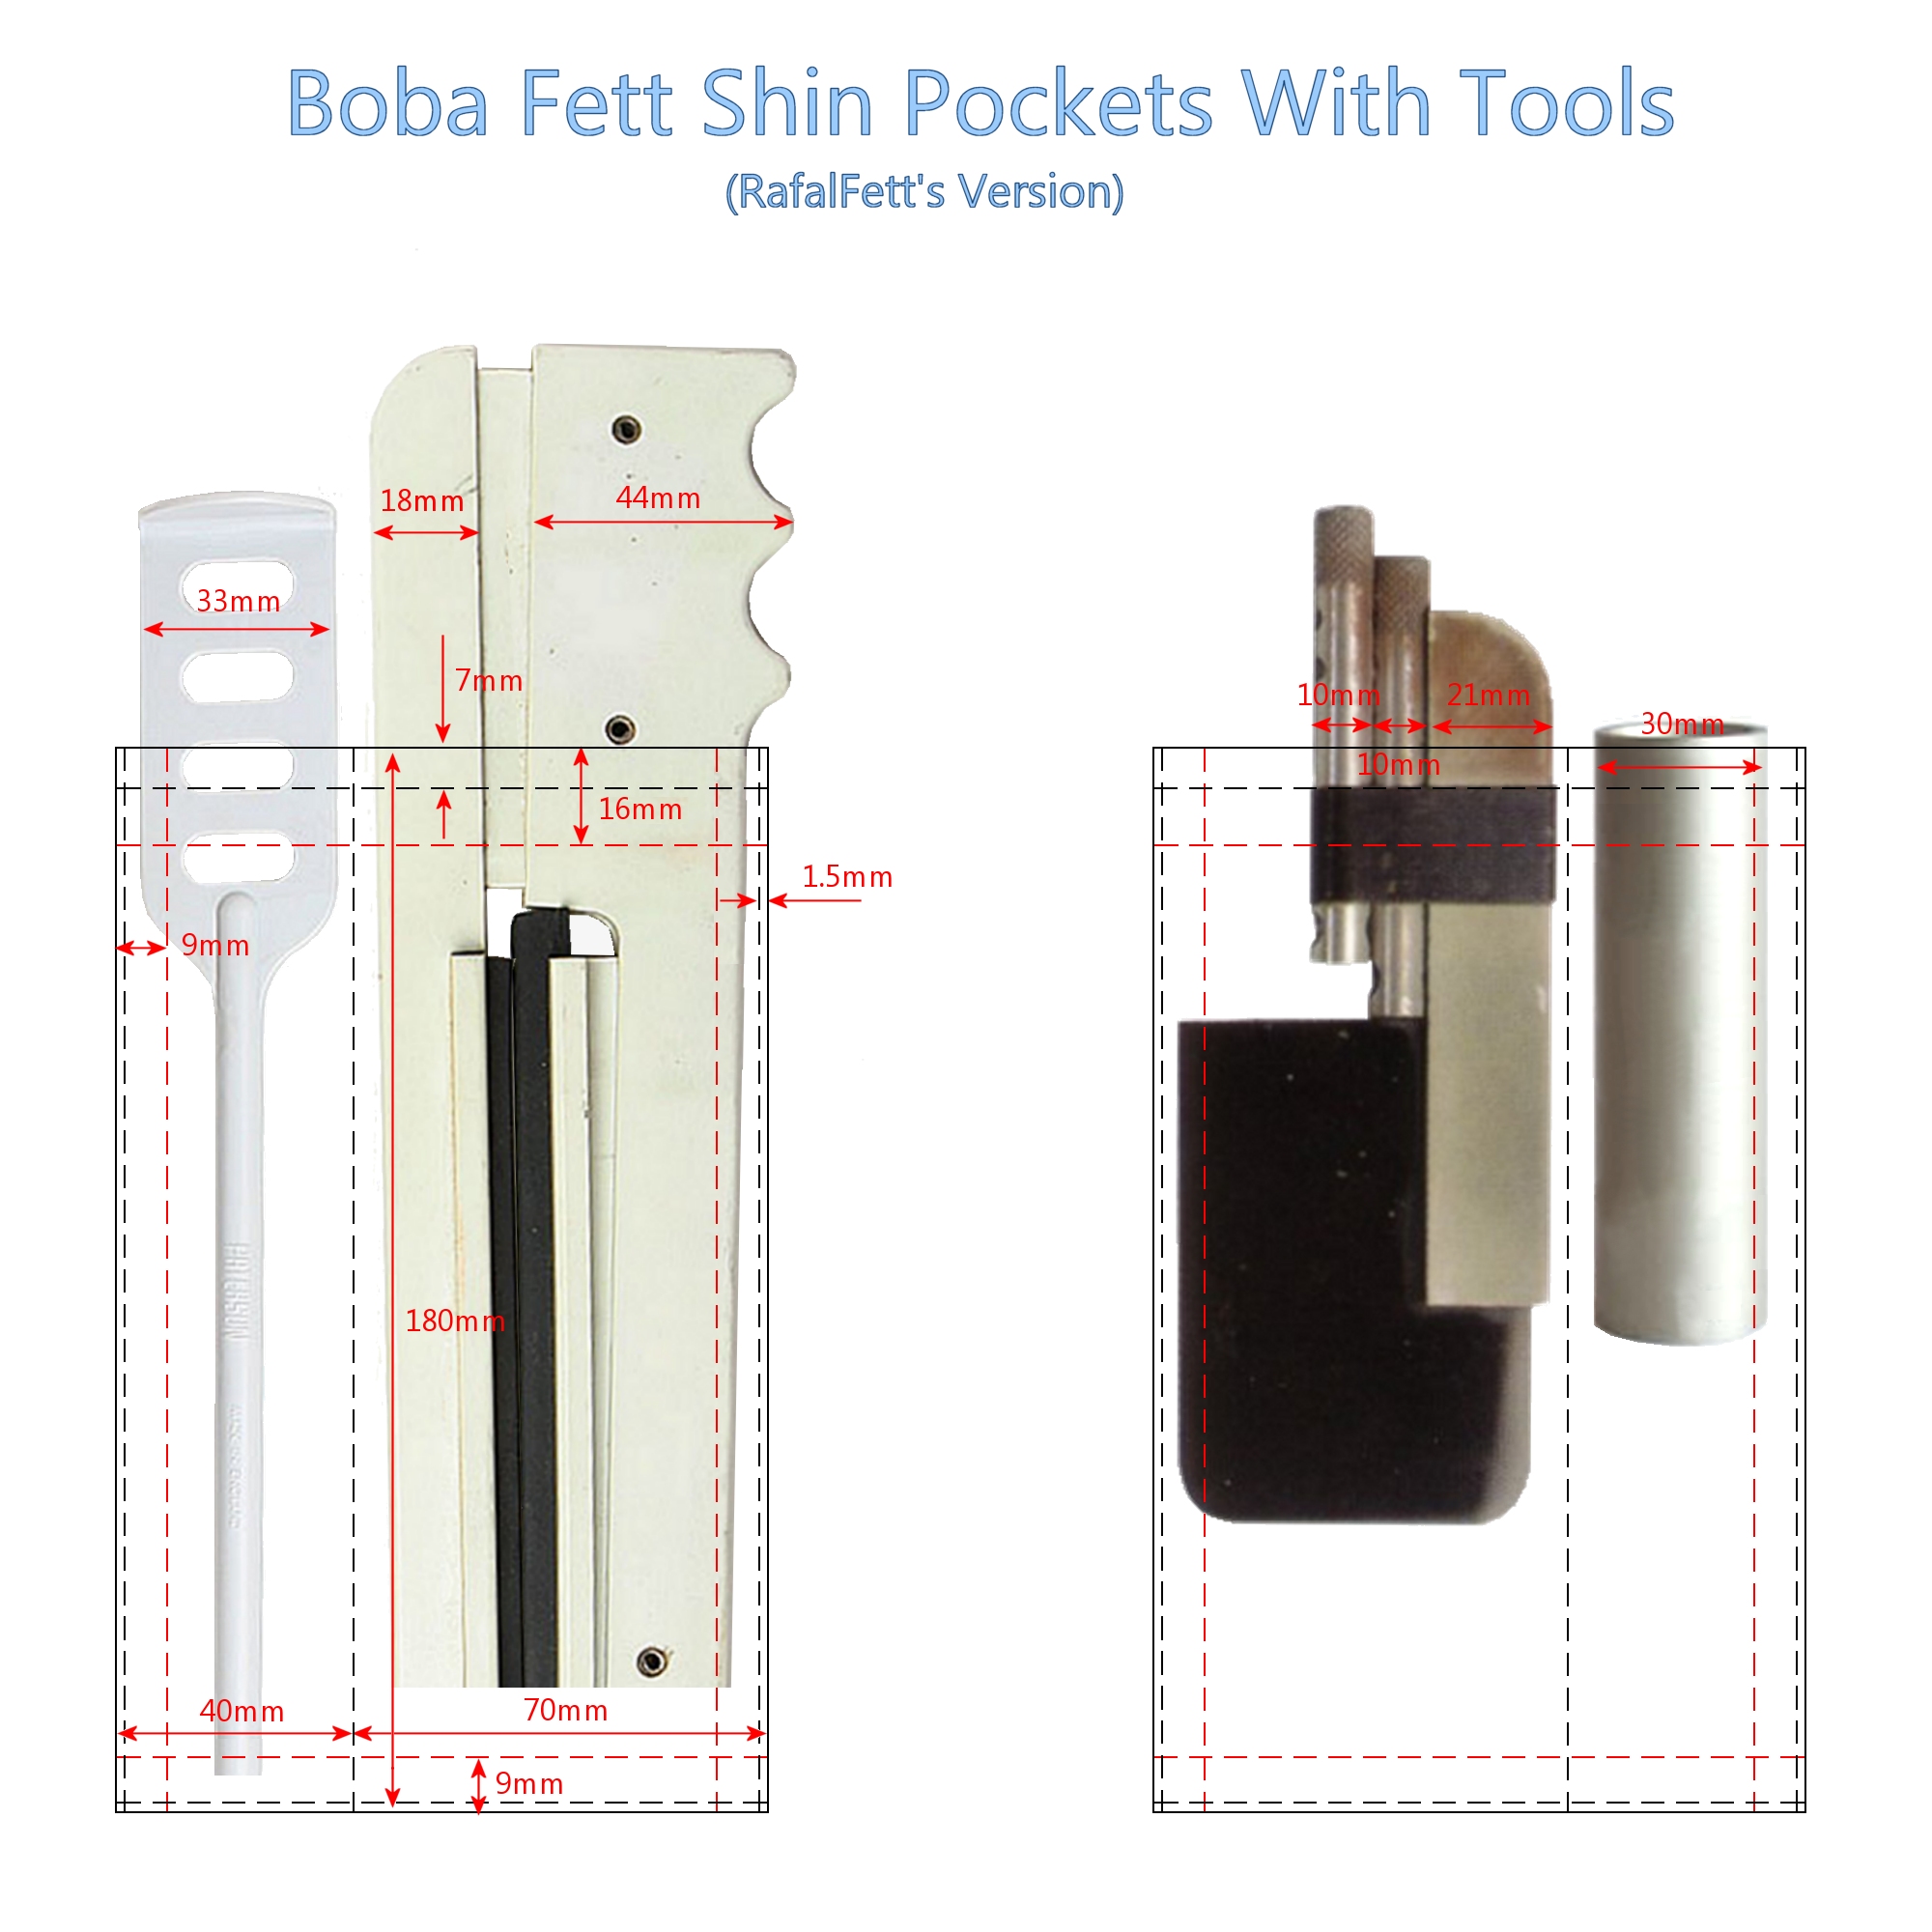 Shin Tools In Pockets.jpg